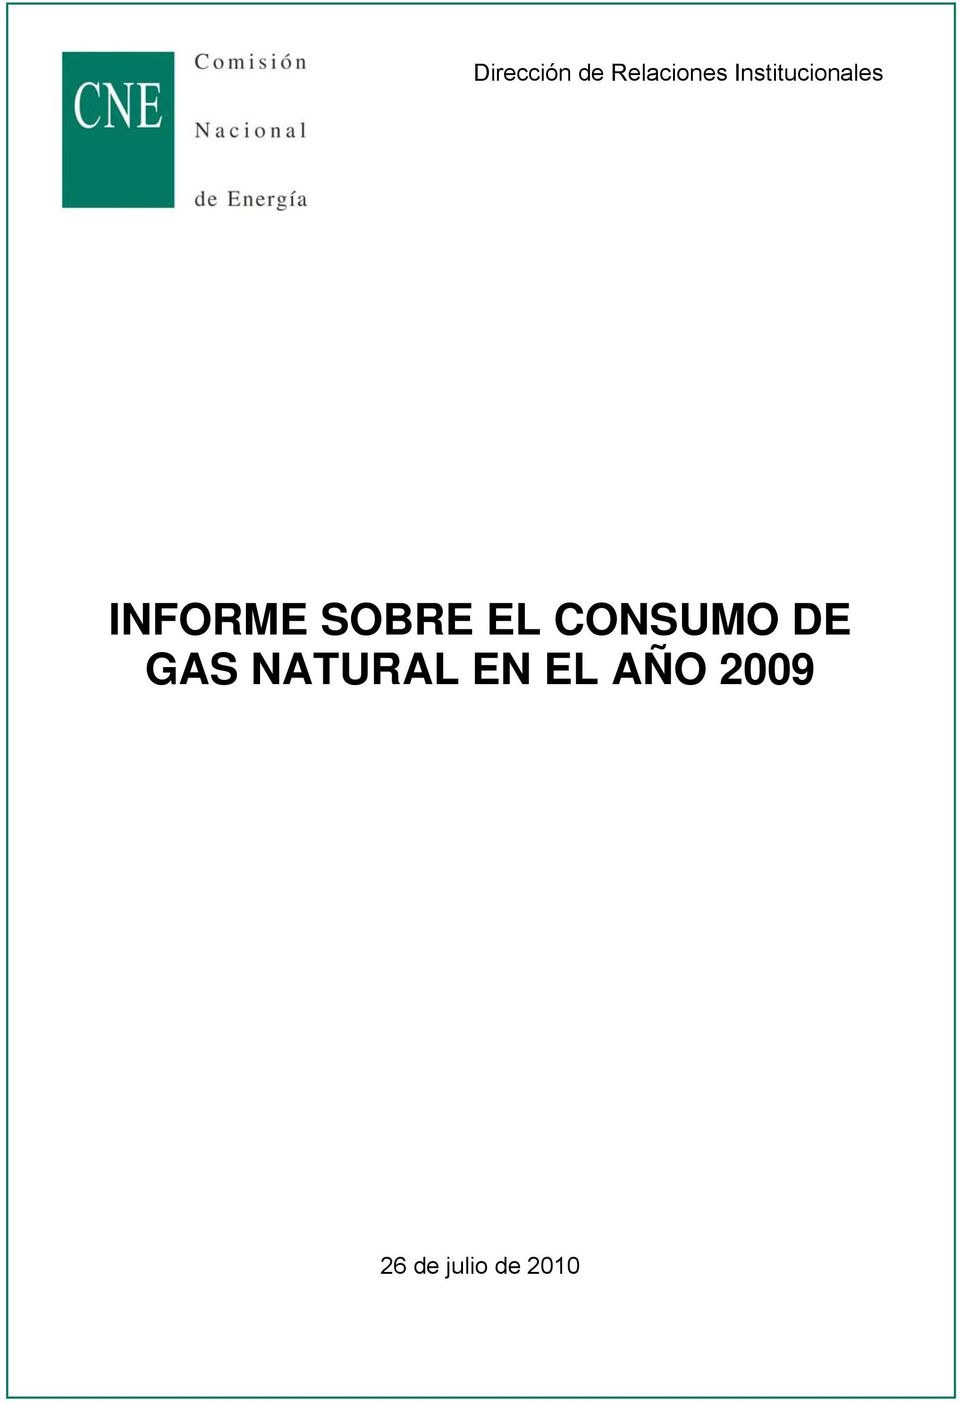 SOBRE EL CONSUMO DE GAS